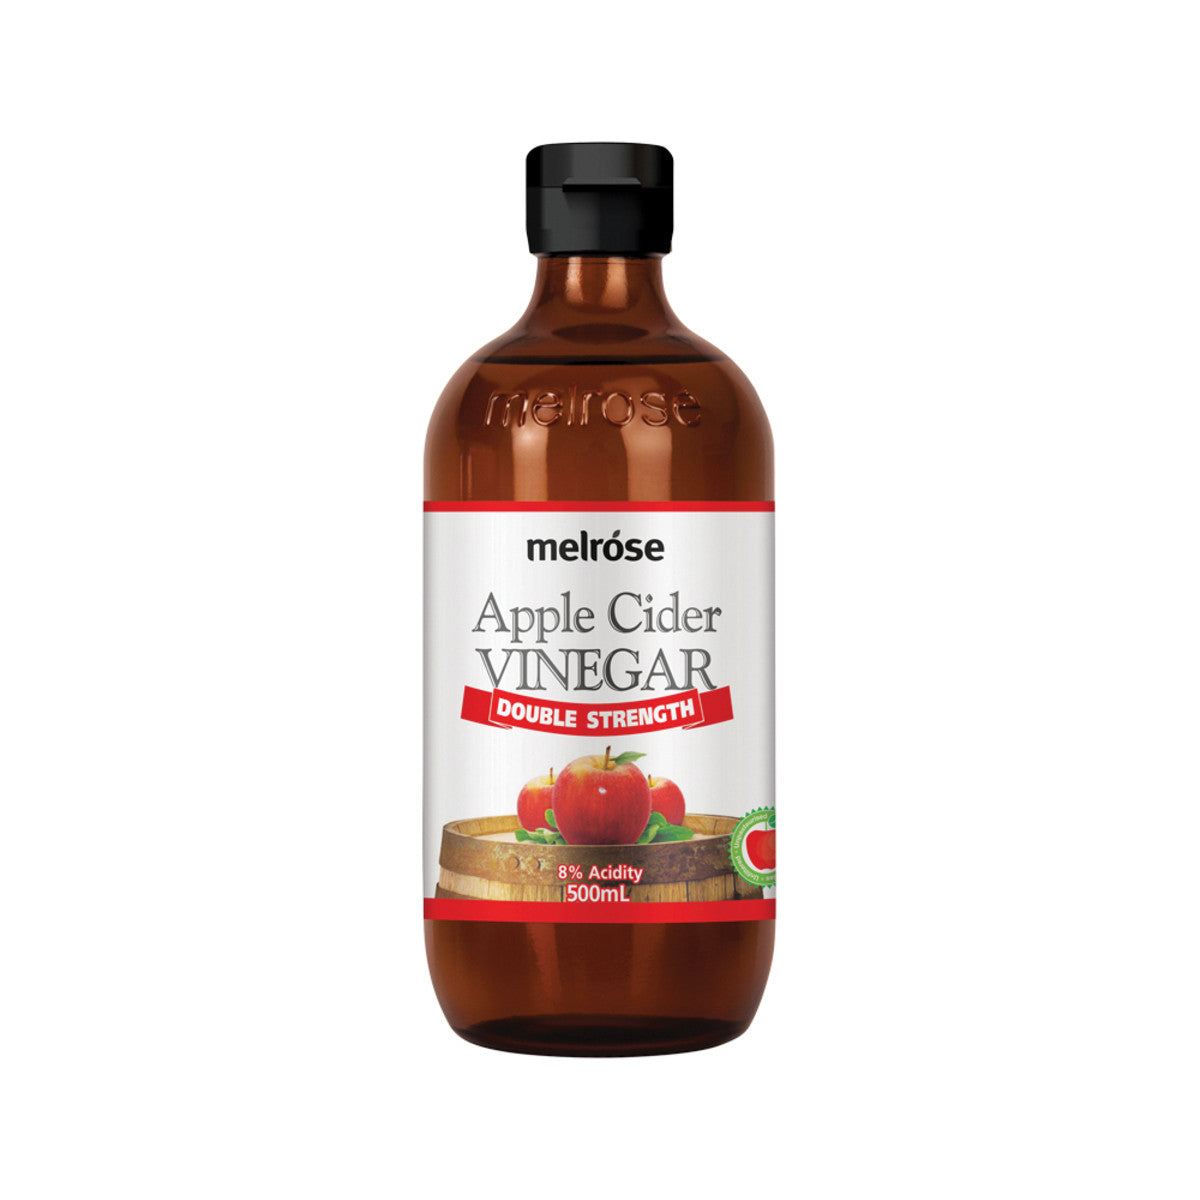 Melrose - Apple Cider Vinegar Double Strength